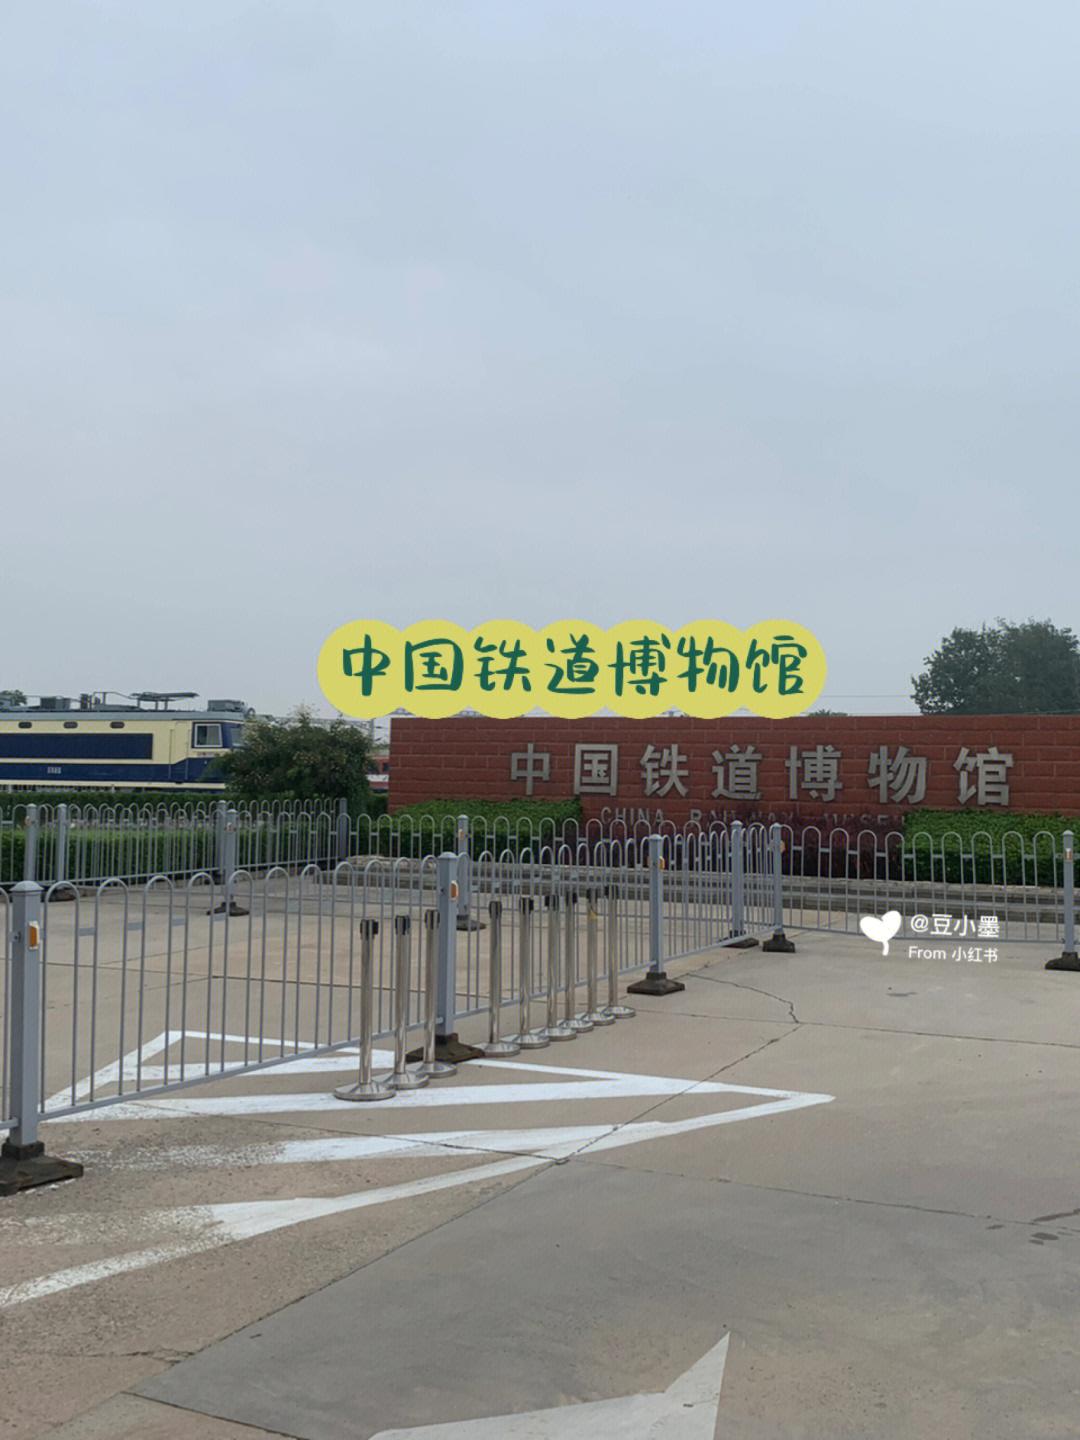 铁道博物馆(东郊展馆)小w是个火车迷,所以铁道博物馆是本次北京之行的